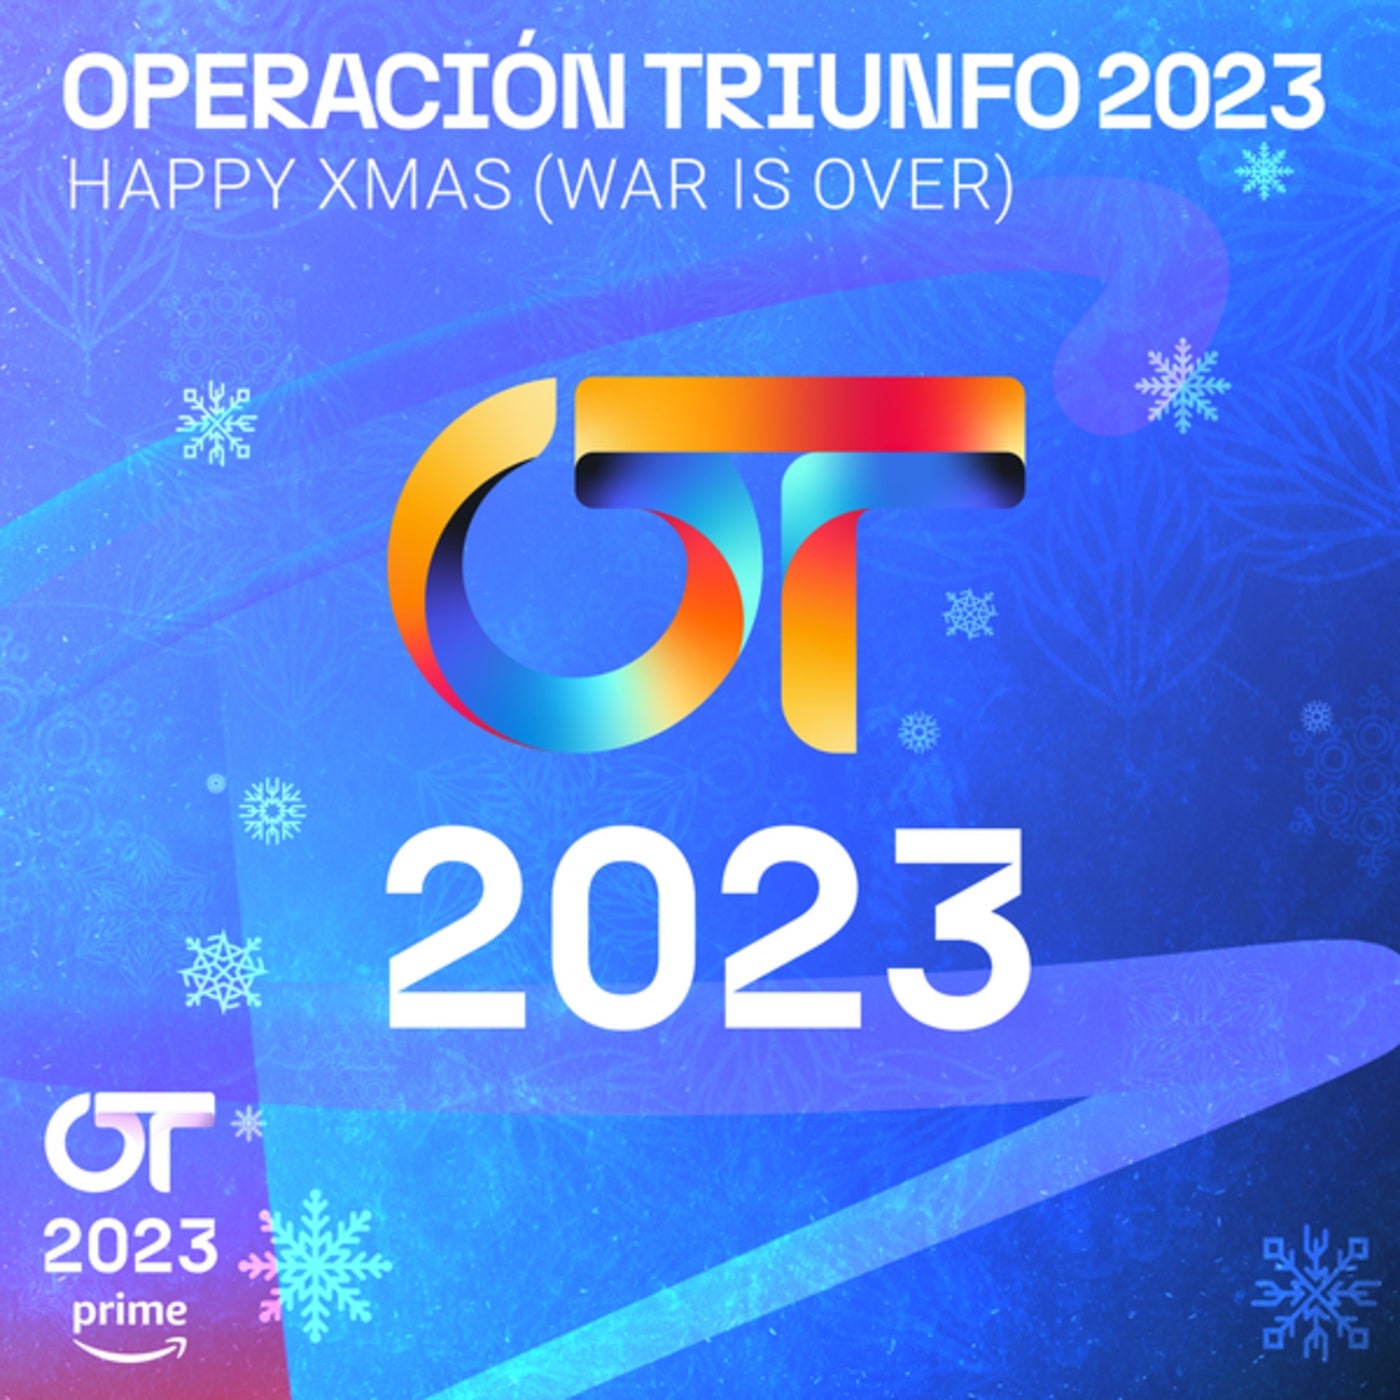 Navidad, Navidad by Operación Triunfo 2023 and Franz Schubert